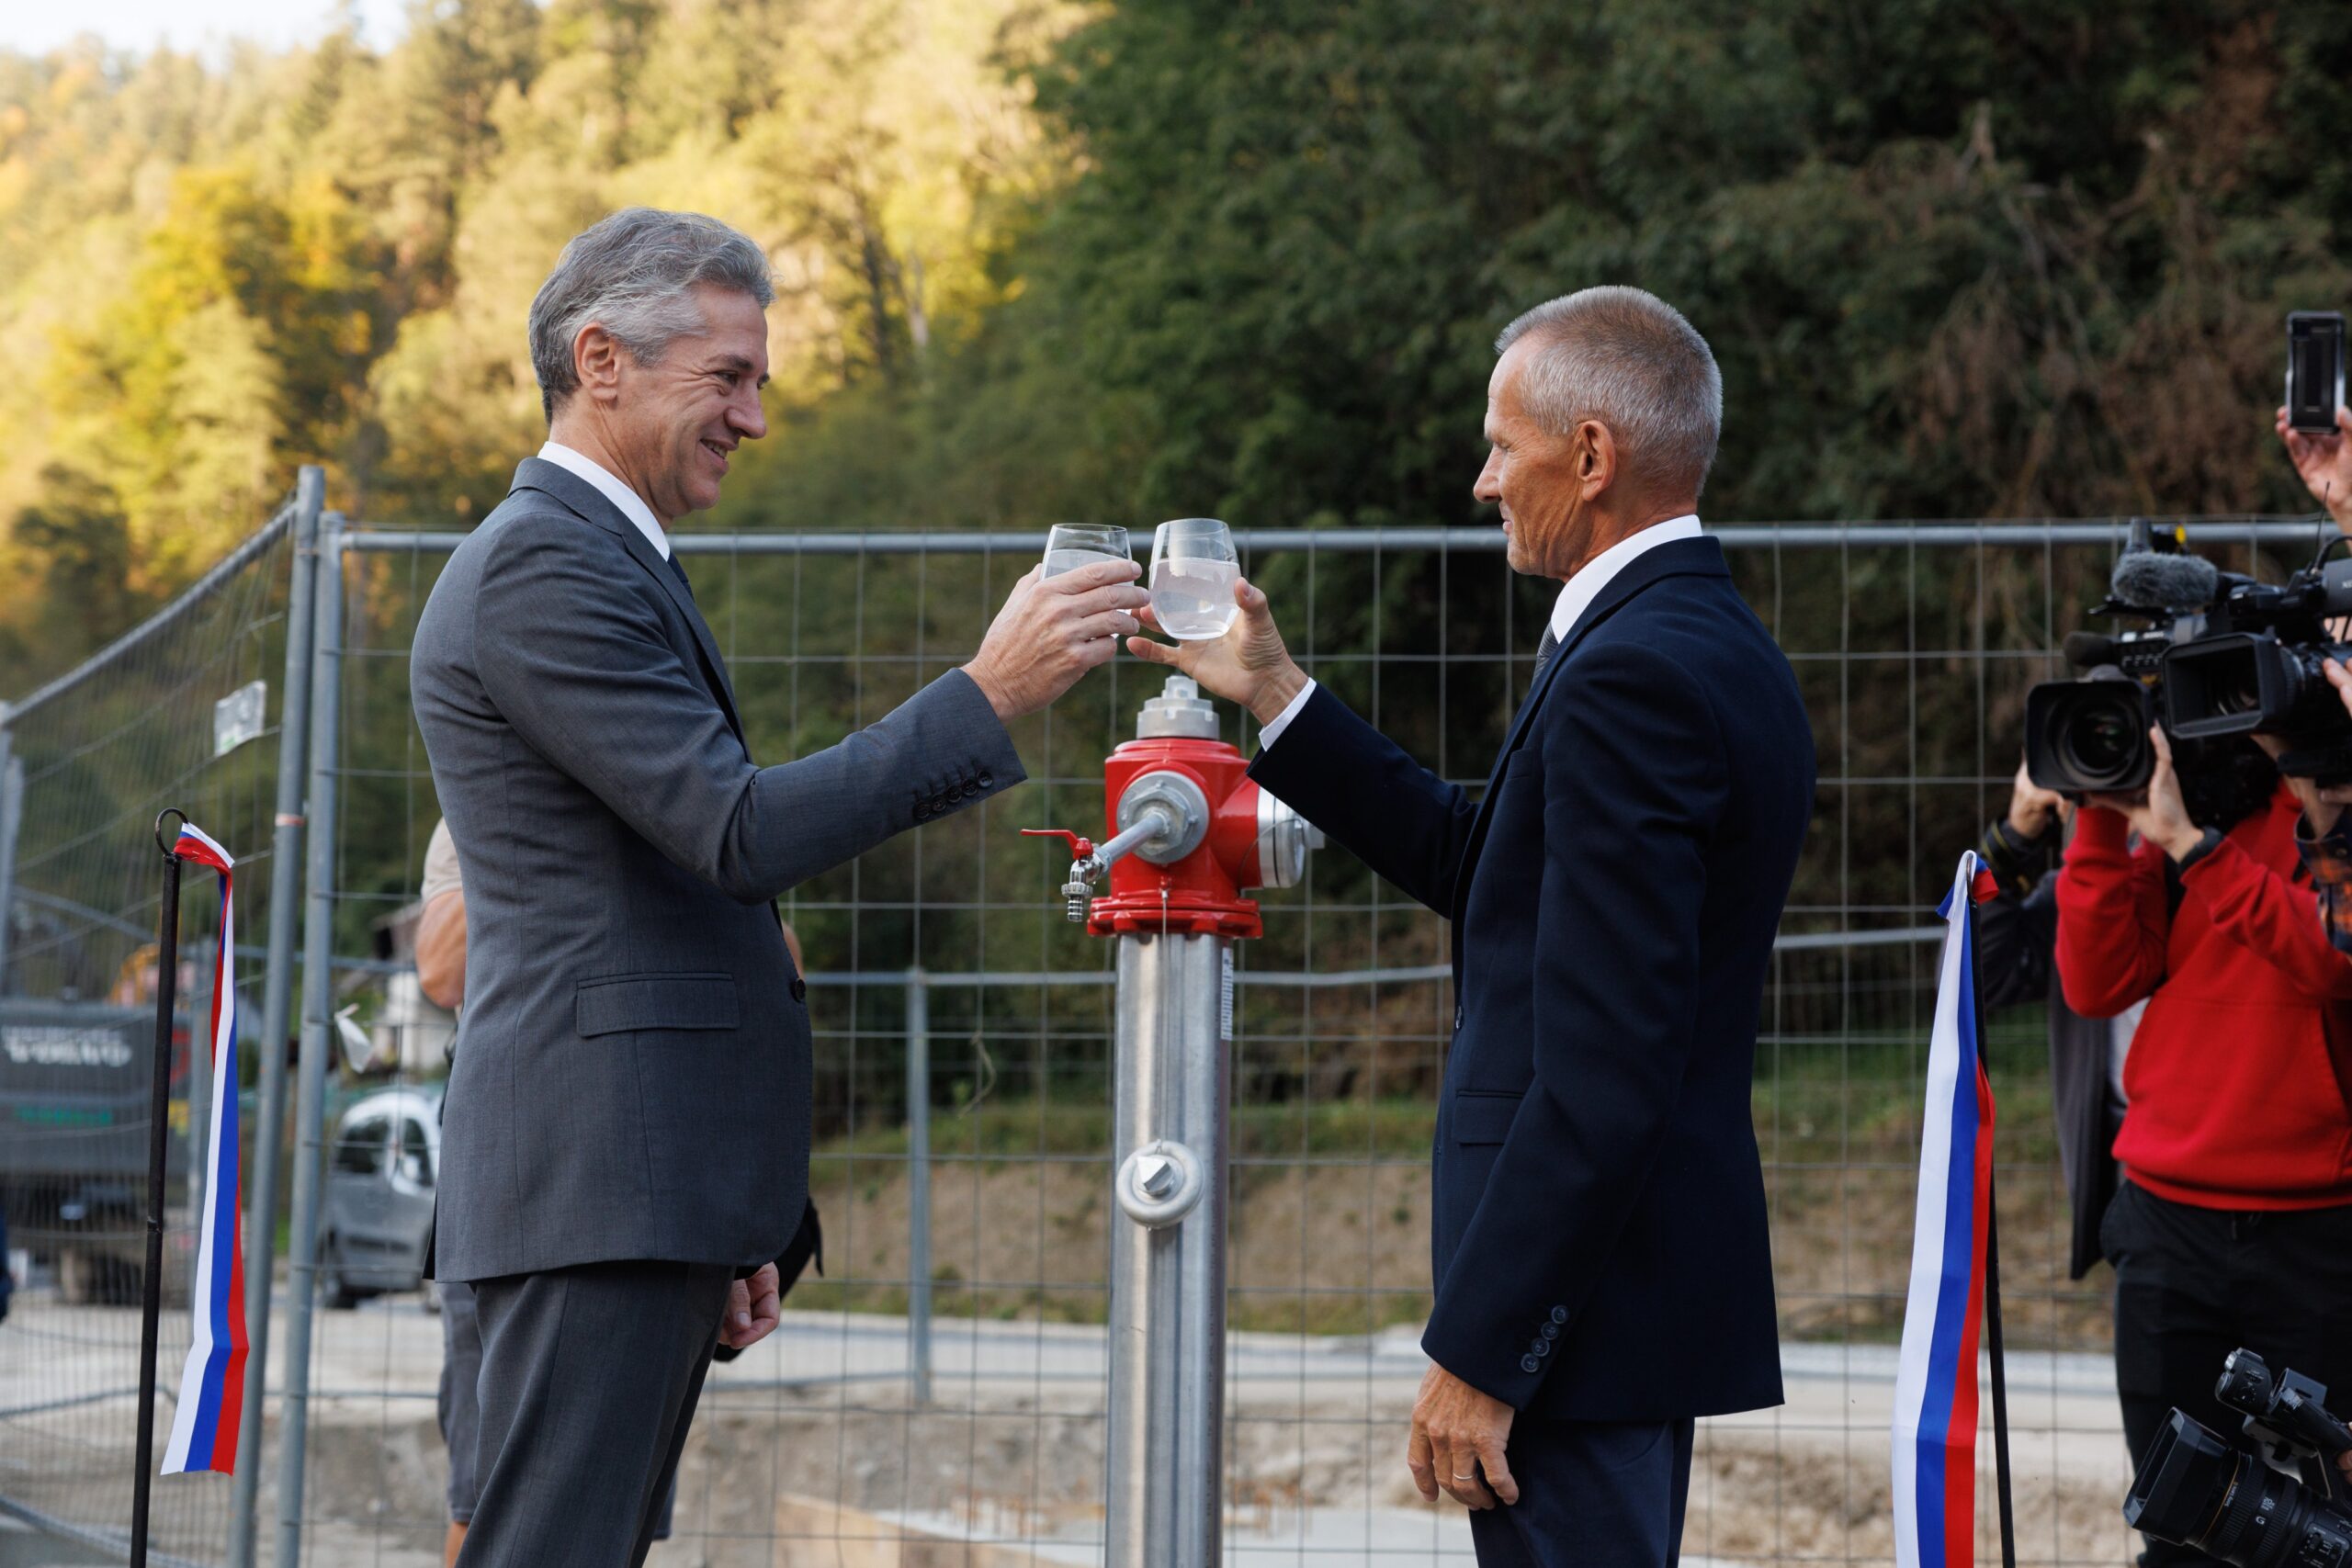 (VIDEO) Golob in Tasič nazdravila s prevaljsko vodo – Robert Golob se je poklonil županu Tasiču, ta pa se je predsedniku vlade zahvalil “za izpolnjene obljube in pomoč”